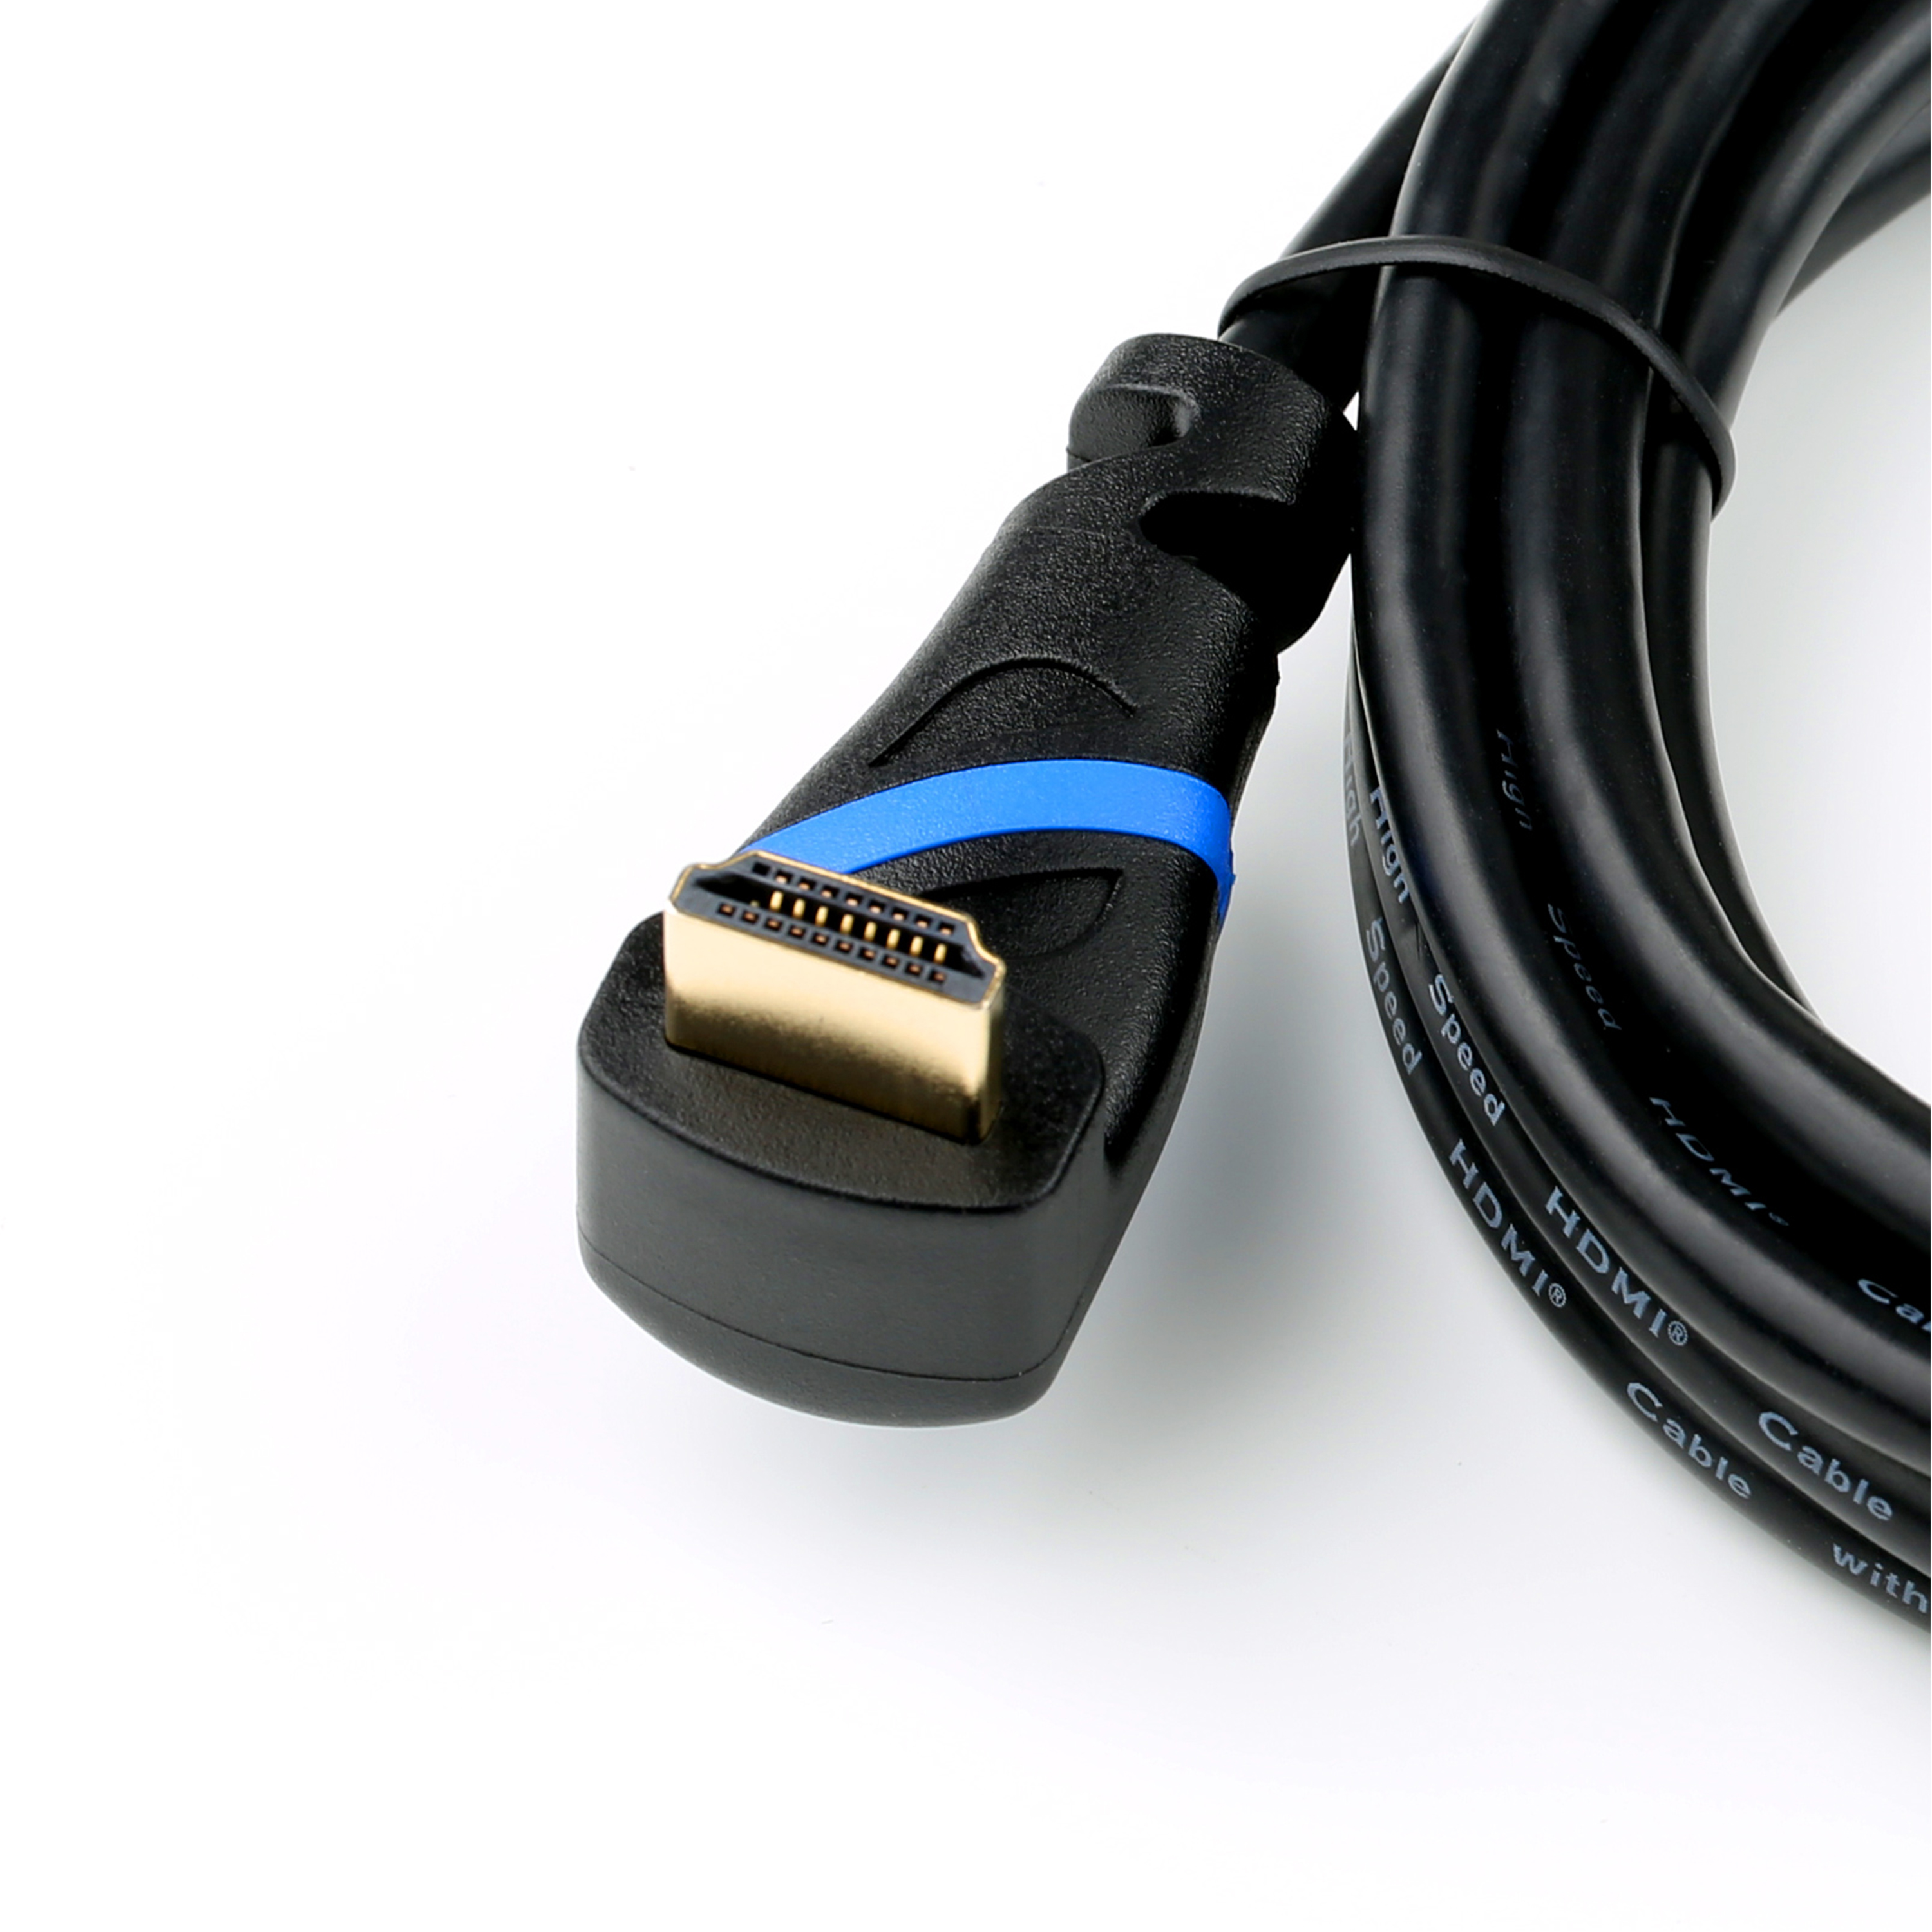 3 2.0 HDMI Kabel, schwarz/blau HDMI m gewinkelt, Kabel, CSL